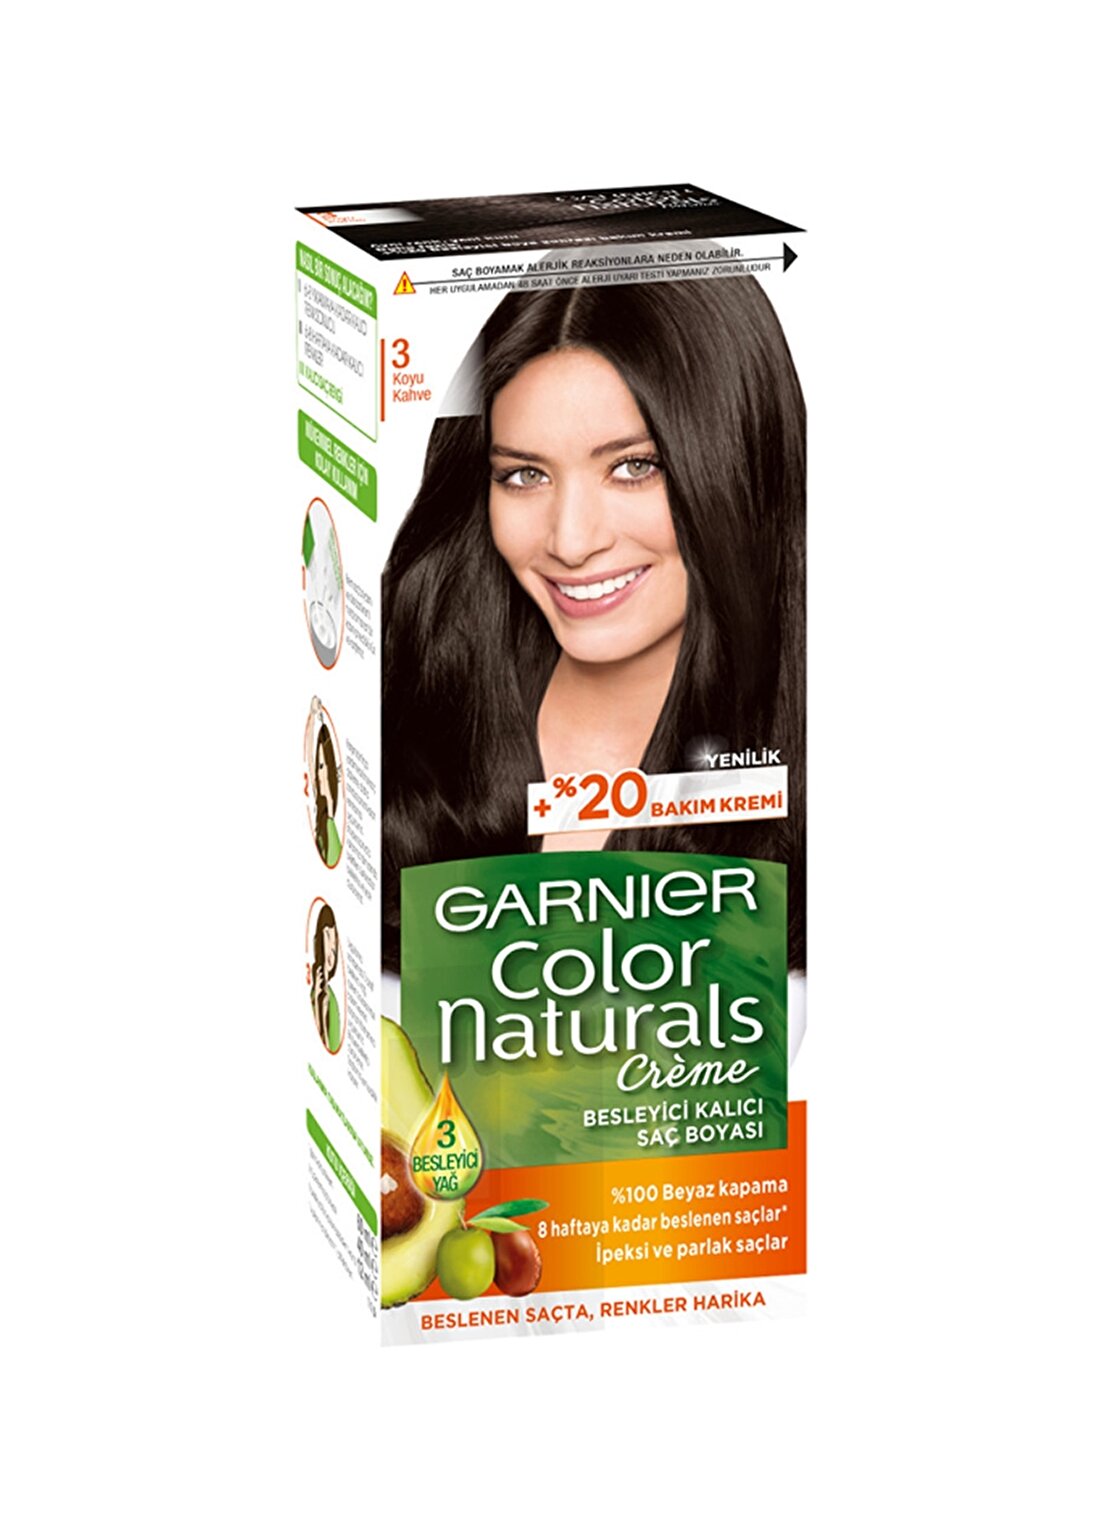 Garnier Color Naturals - 3 Koyu Kahve Saç Boyası